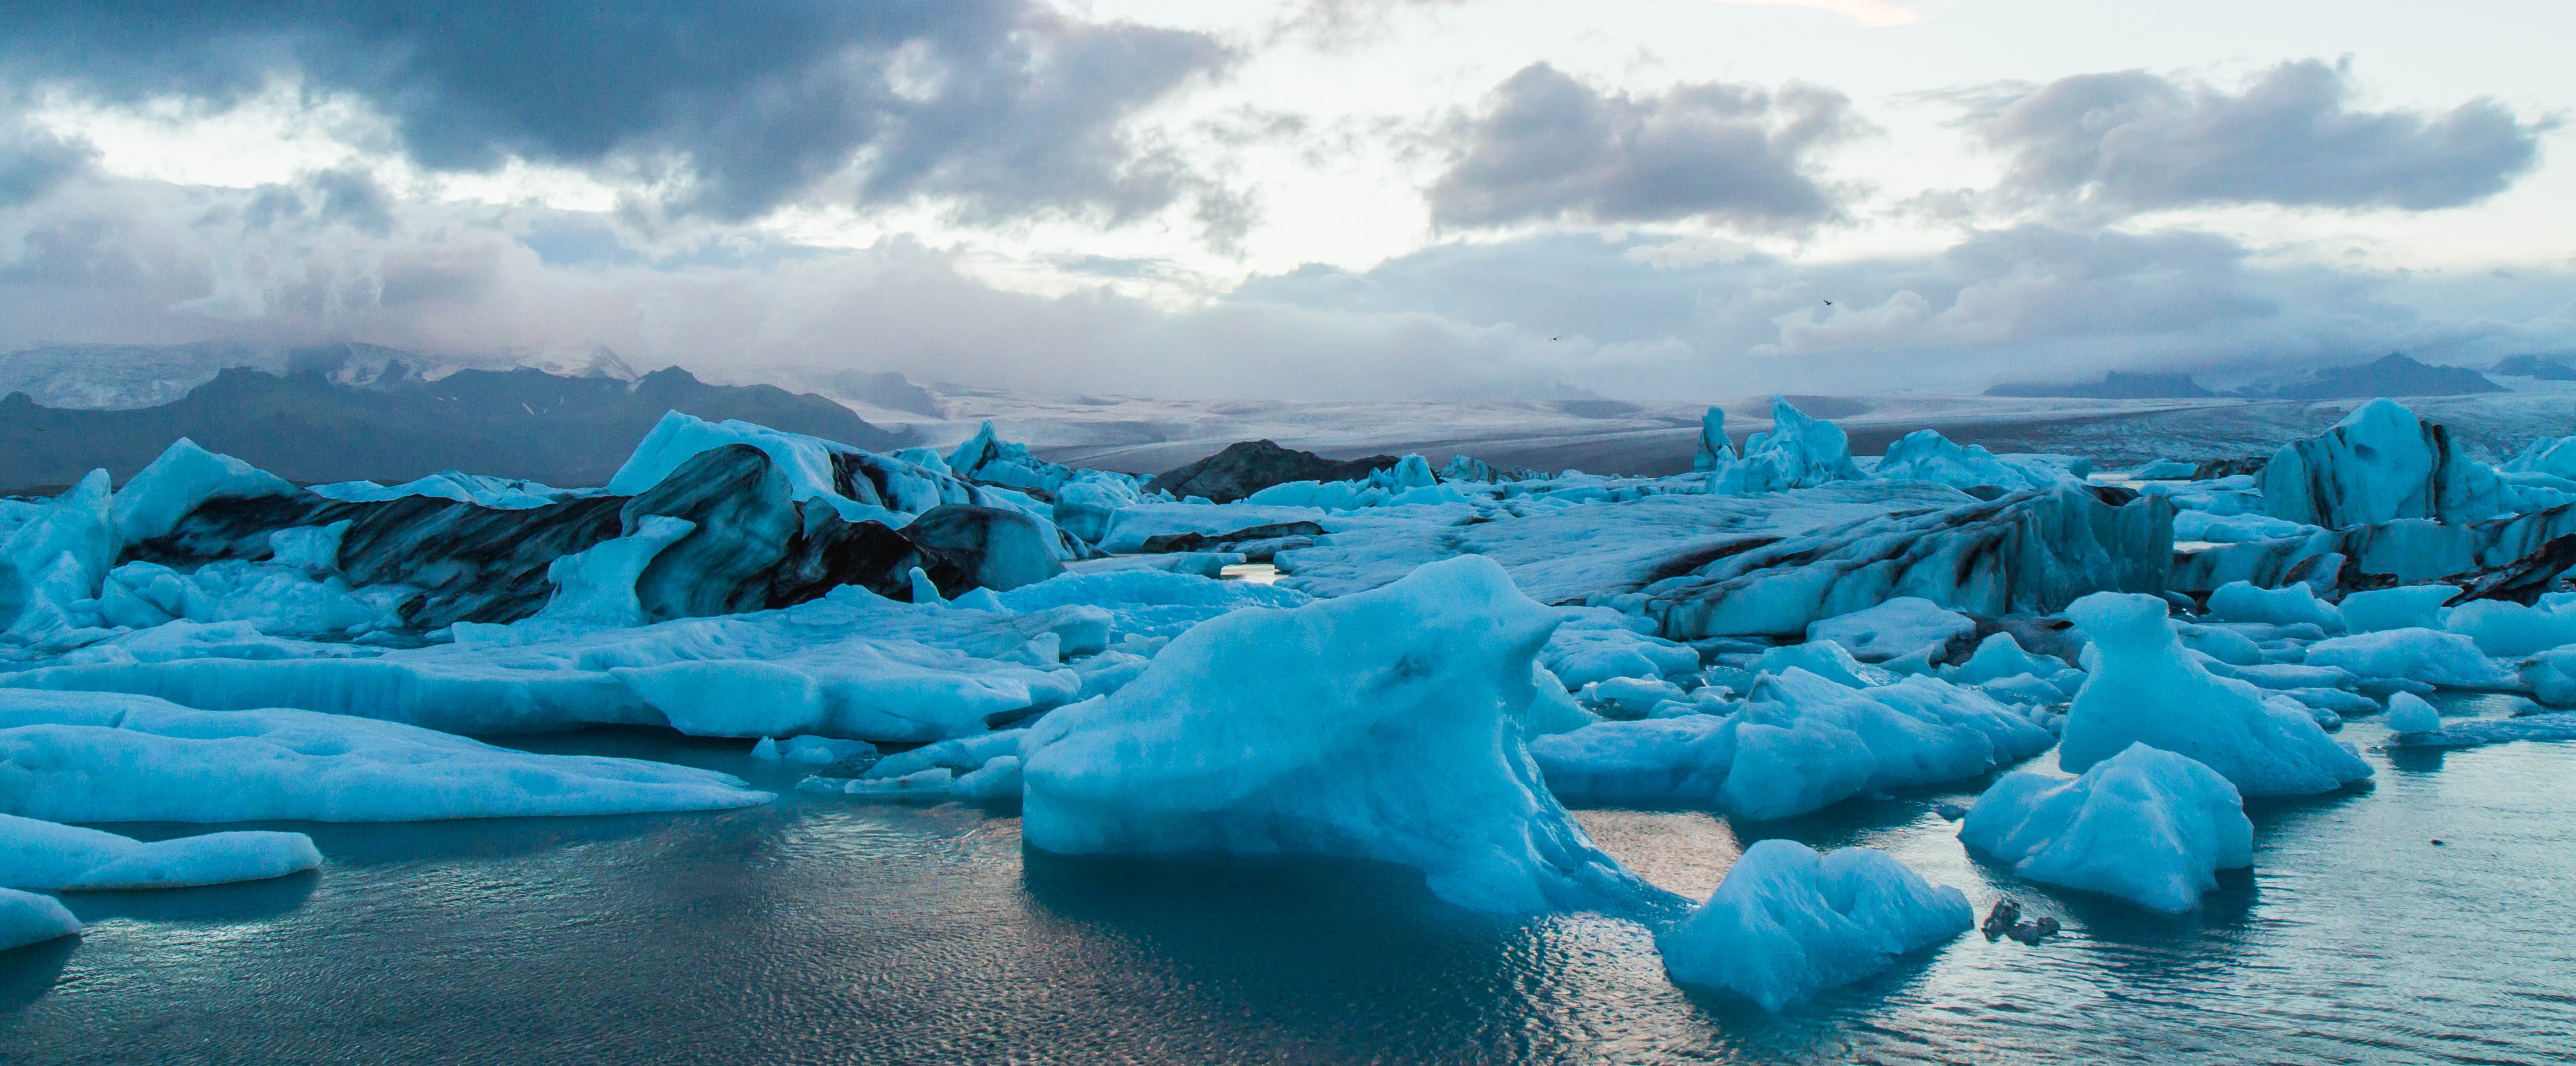 Крупное море северного ледовитого океана. Рельеф островной Арктики. Исландия Северный Ледовитый океан. Льды Северного Ледовитого океана. Ледники островной Арктики.